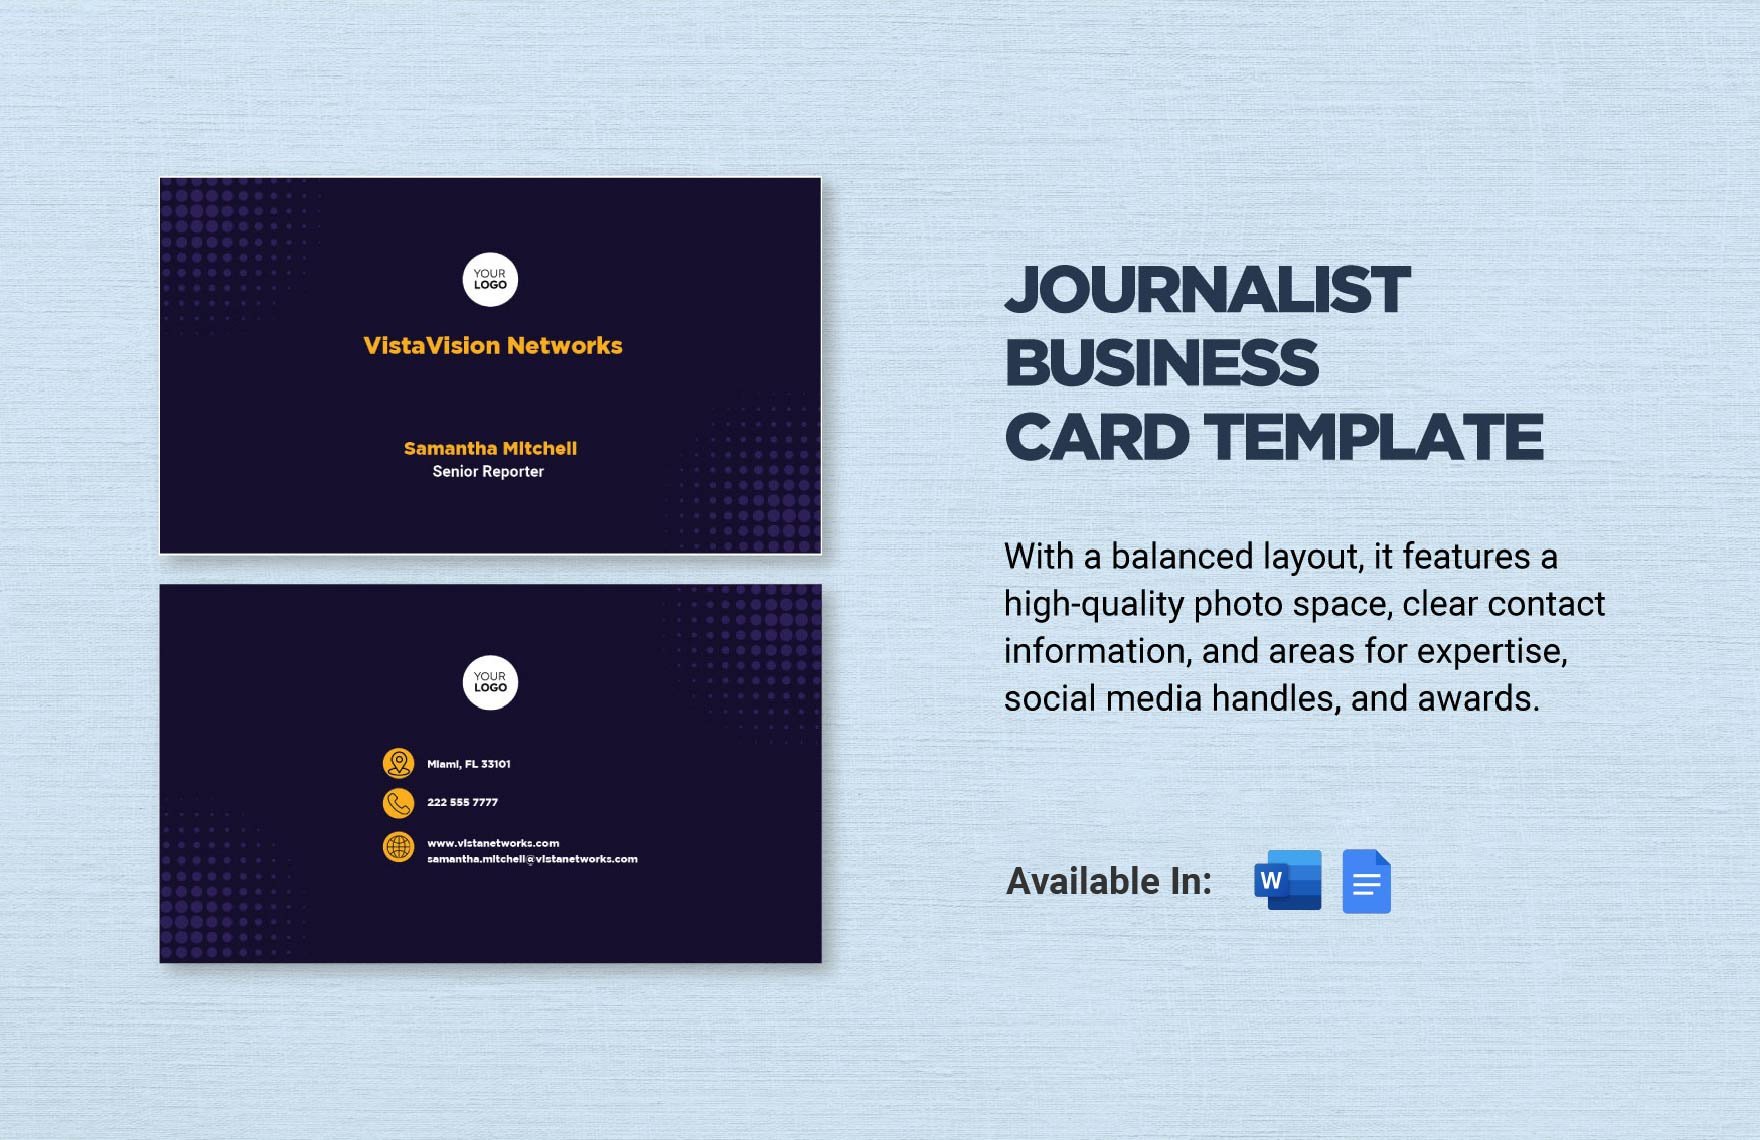 Journalist Business Card Template